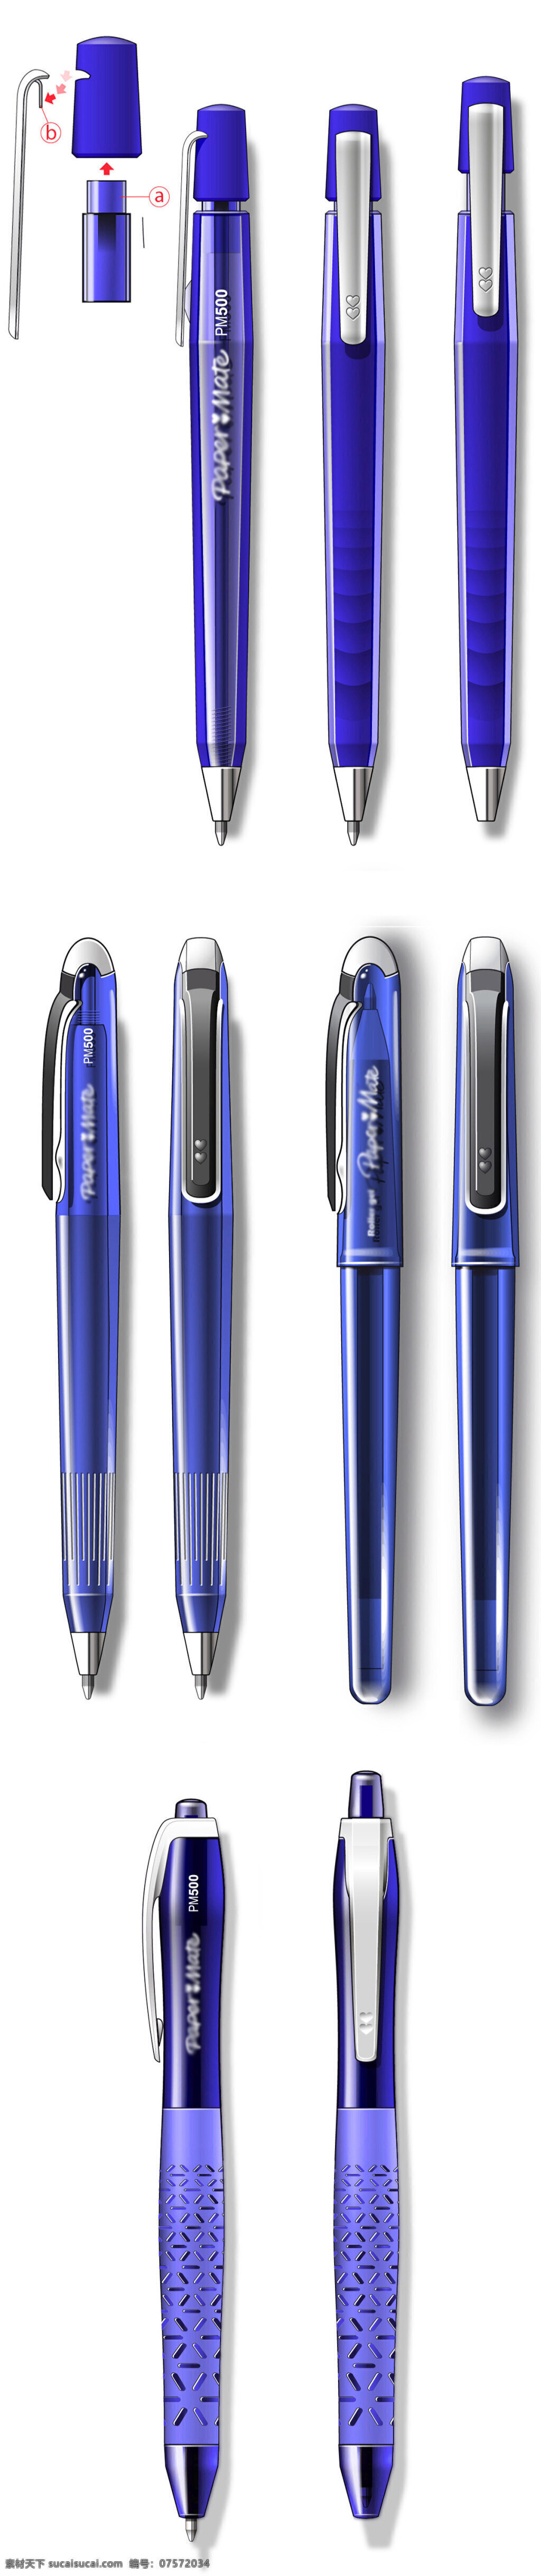 蓝色 透明 水性 笔 大气 水性笔 文具 写字工具